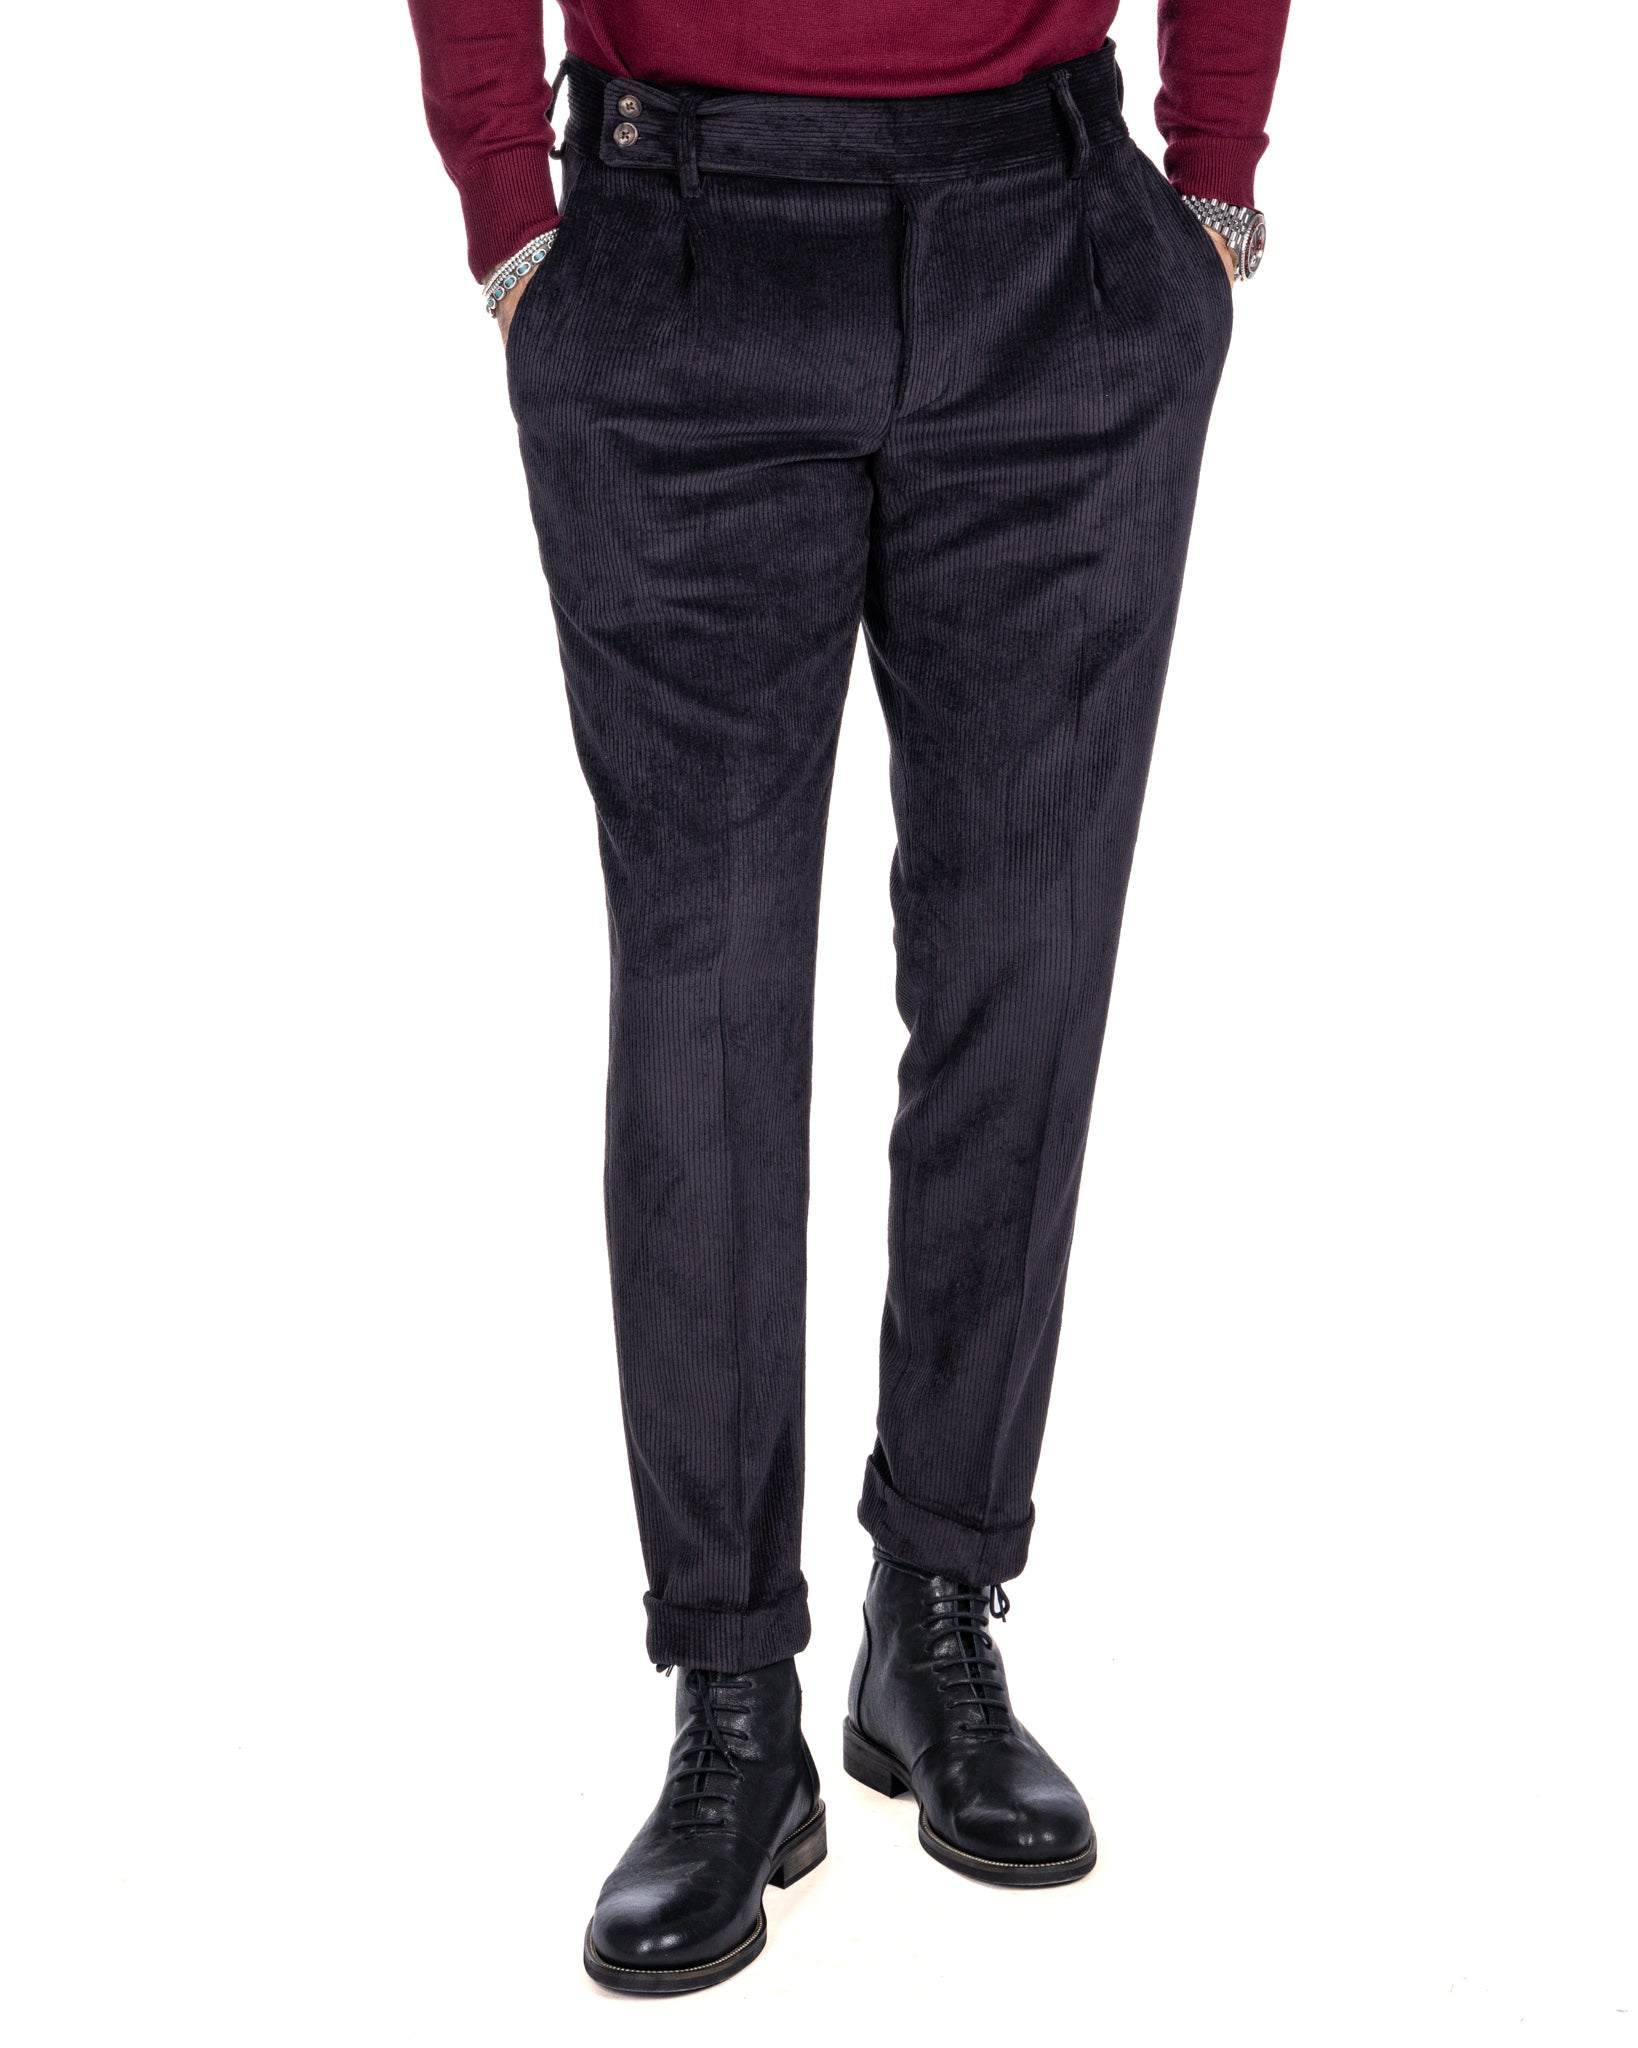 Italian - black high-waisted velvet trousers